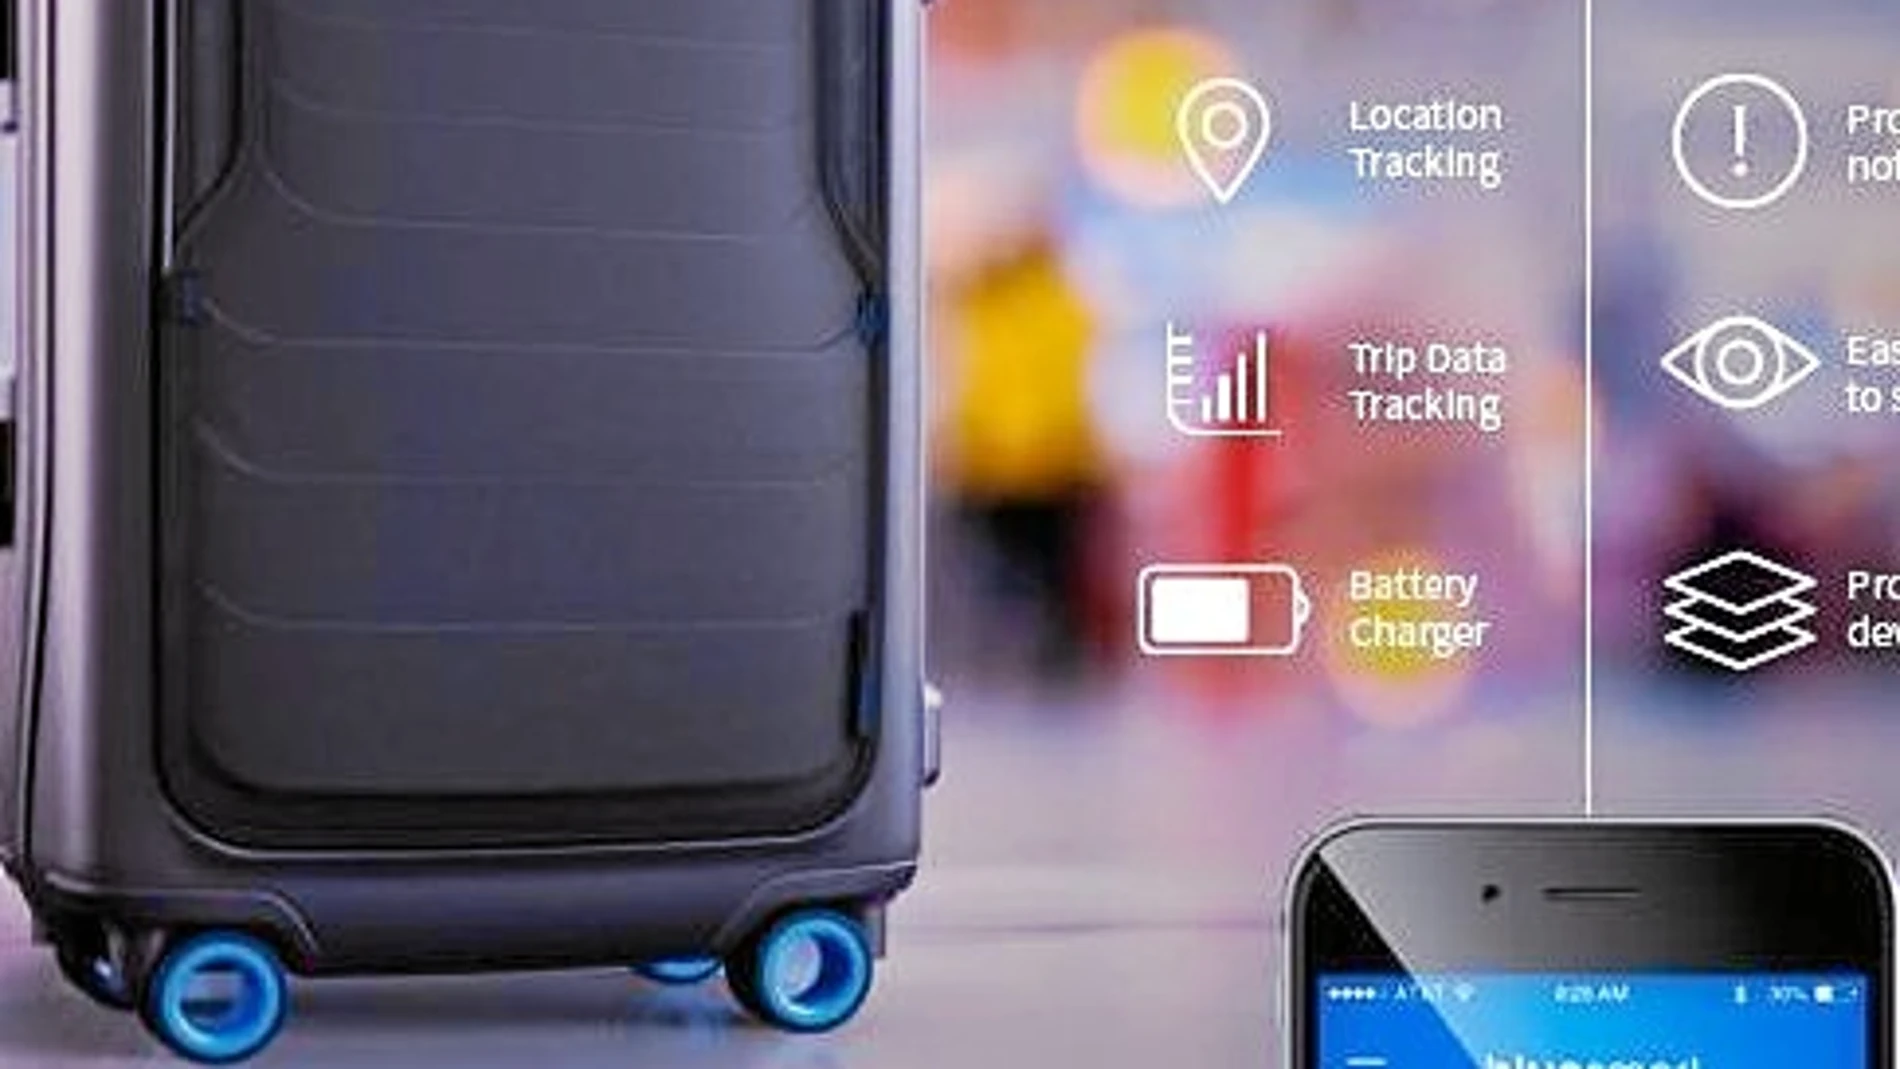 Una app permite controlar la ubicación de la maleta